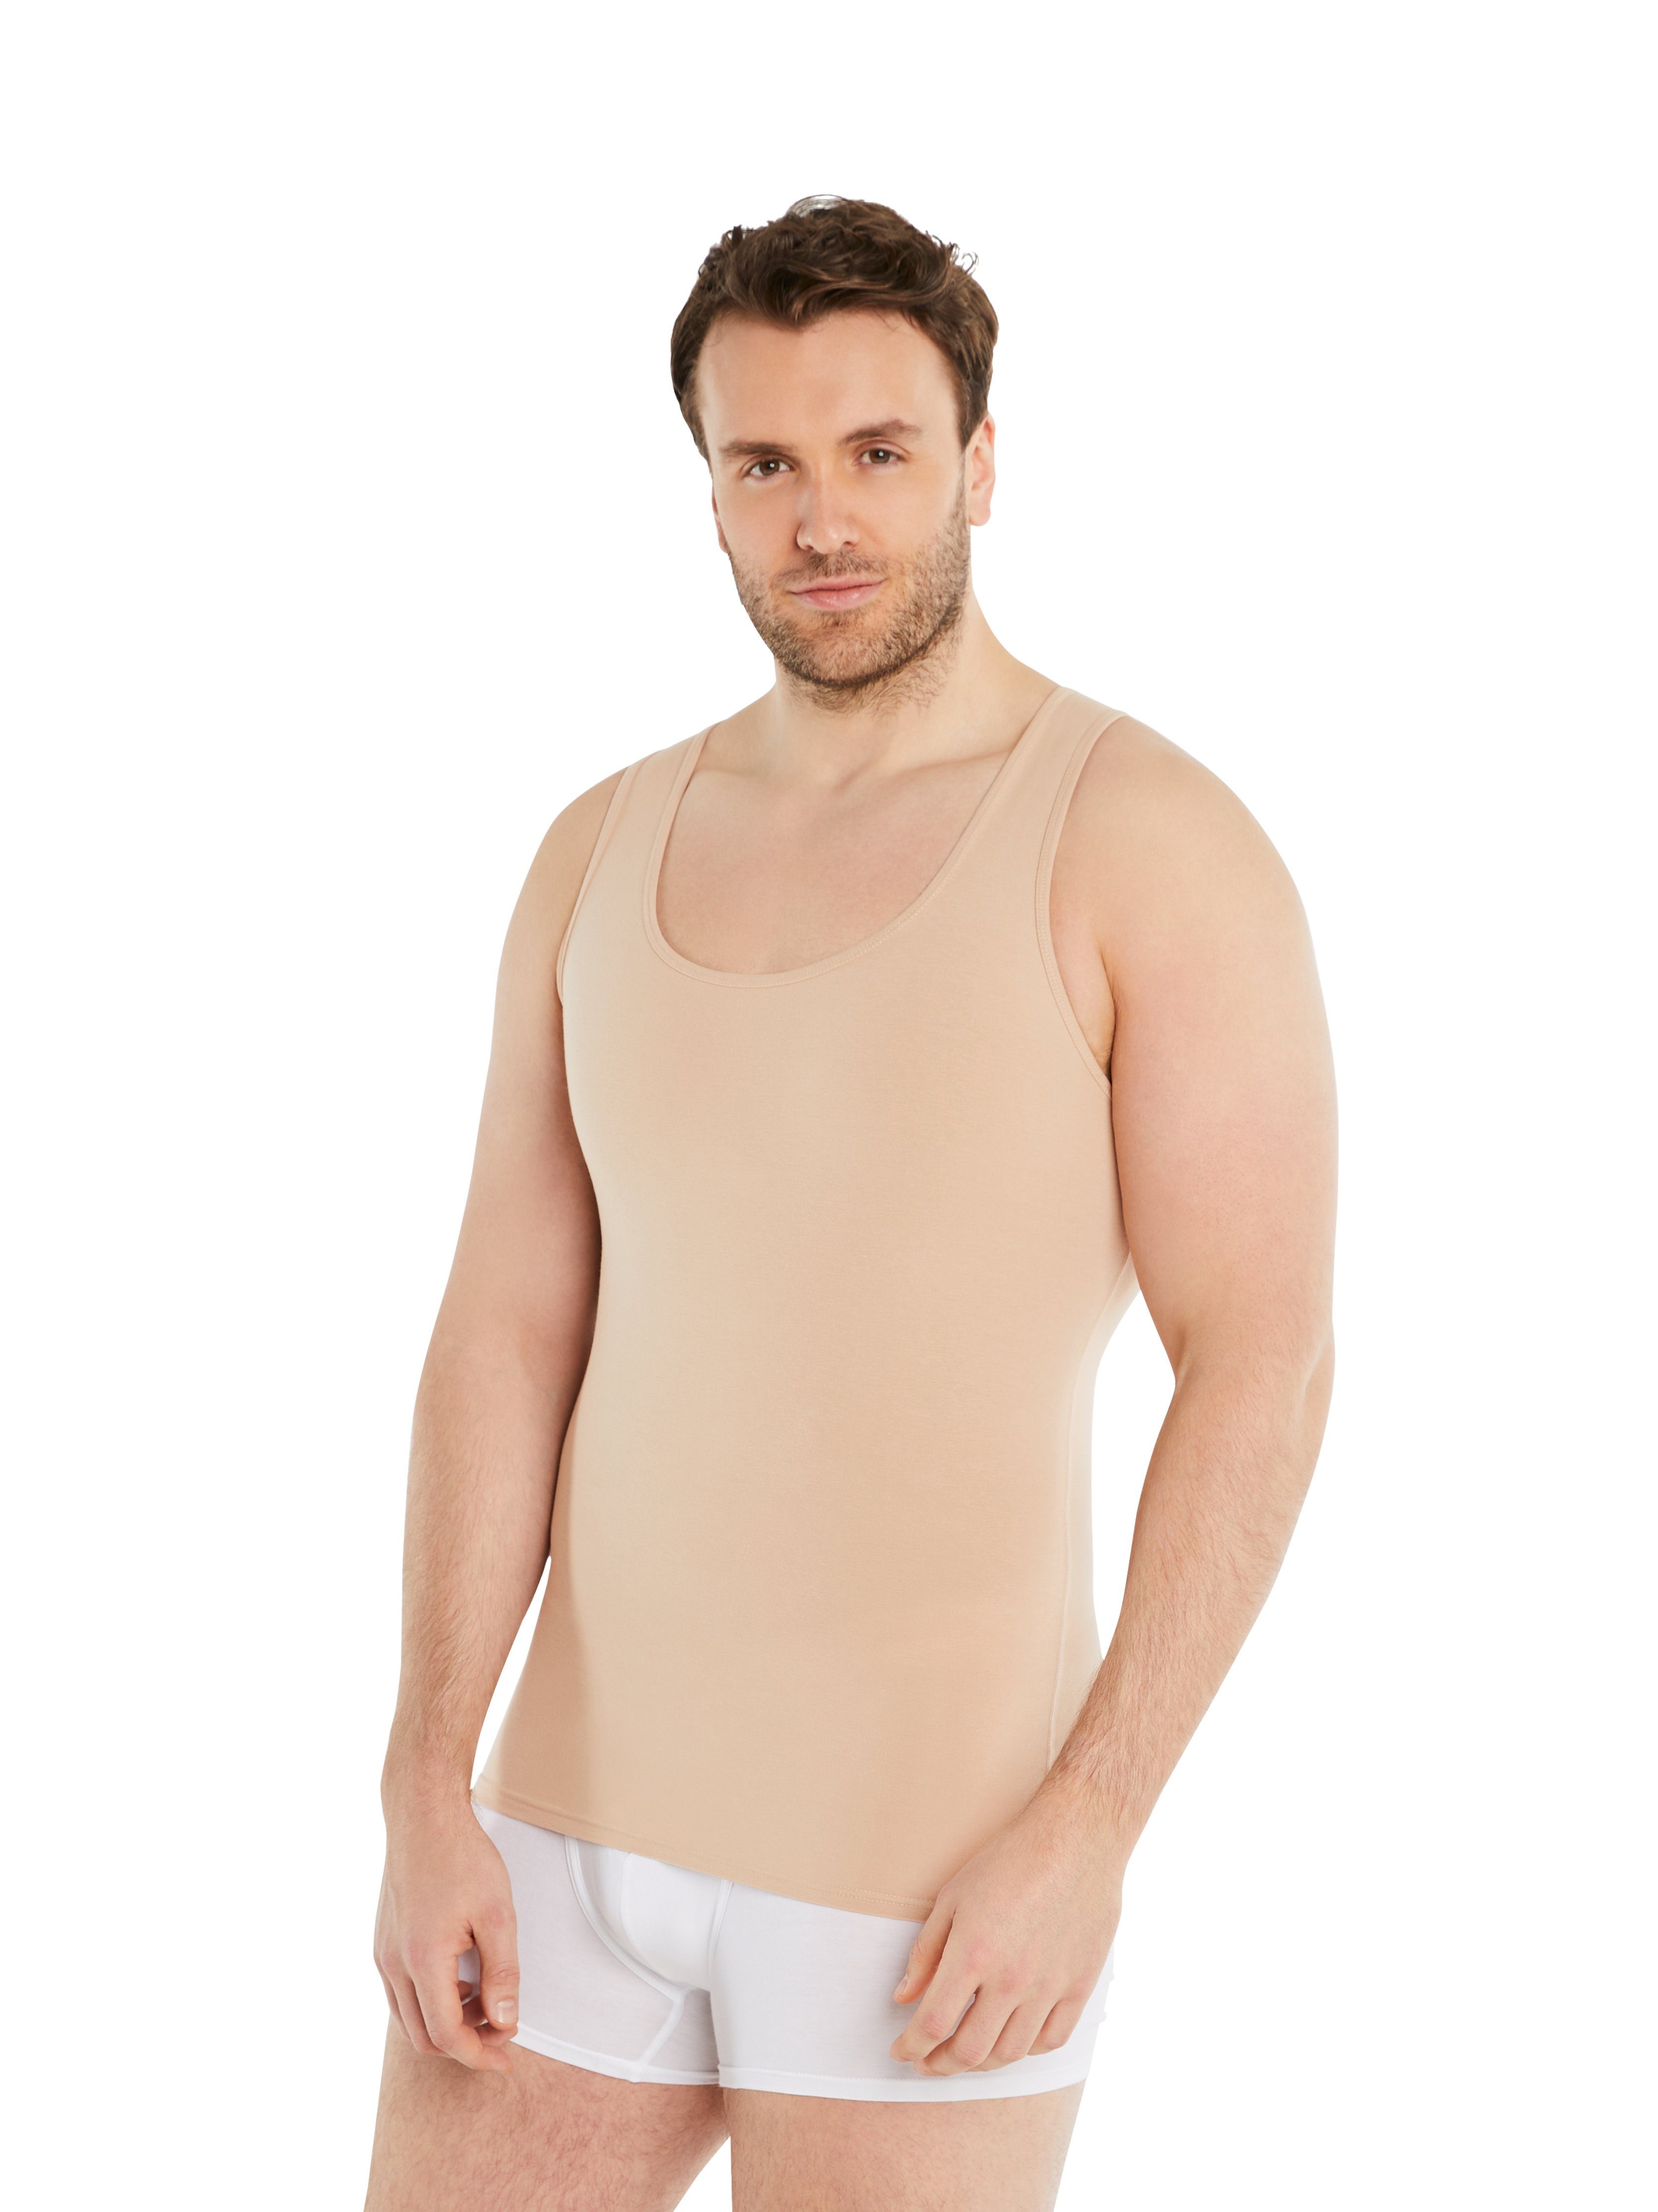 FINN Design Shapinghemd Shapewear Kompressions-Unterhemd Ärmellos Herren extra starke Kompression, eine Kleidergröße weniger light beige